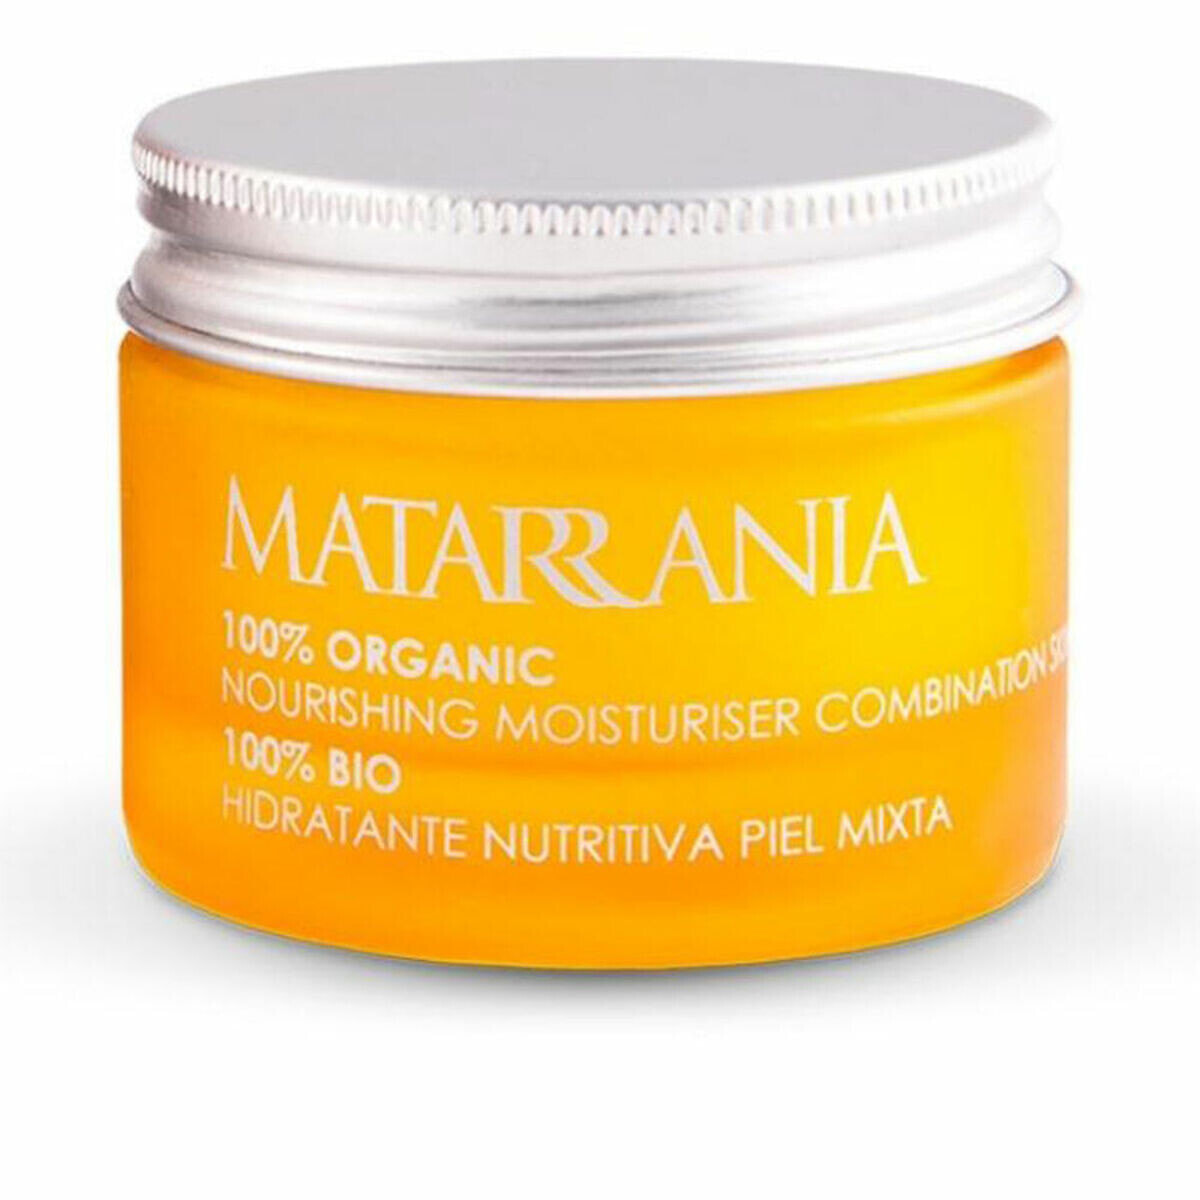 Питательный крем Matarrania 100% Bio Смешанная кожа 30 ml